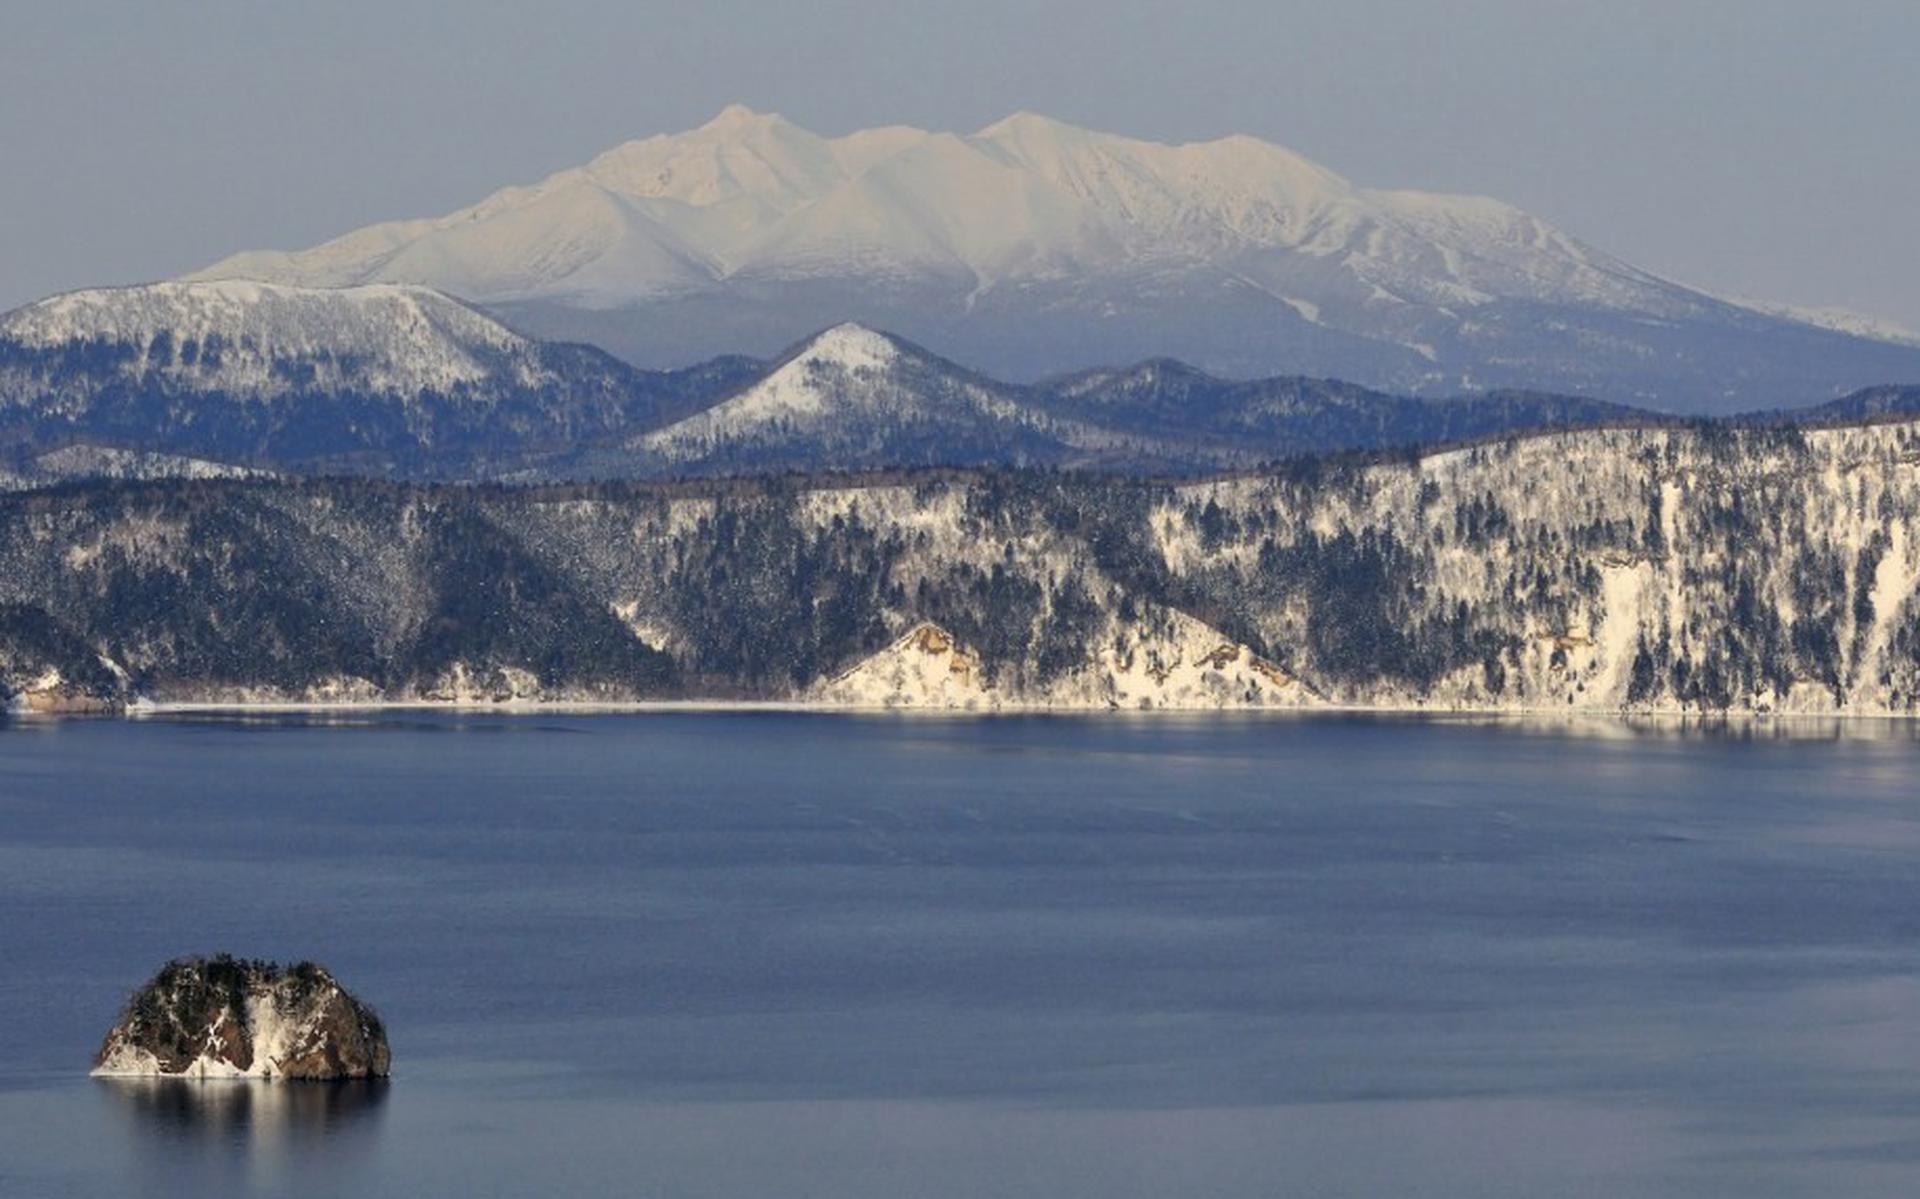 Philip Friskorn vertelt ondere andere over ‘Hokkaido, een Japans wintersprookje’.